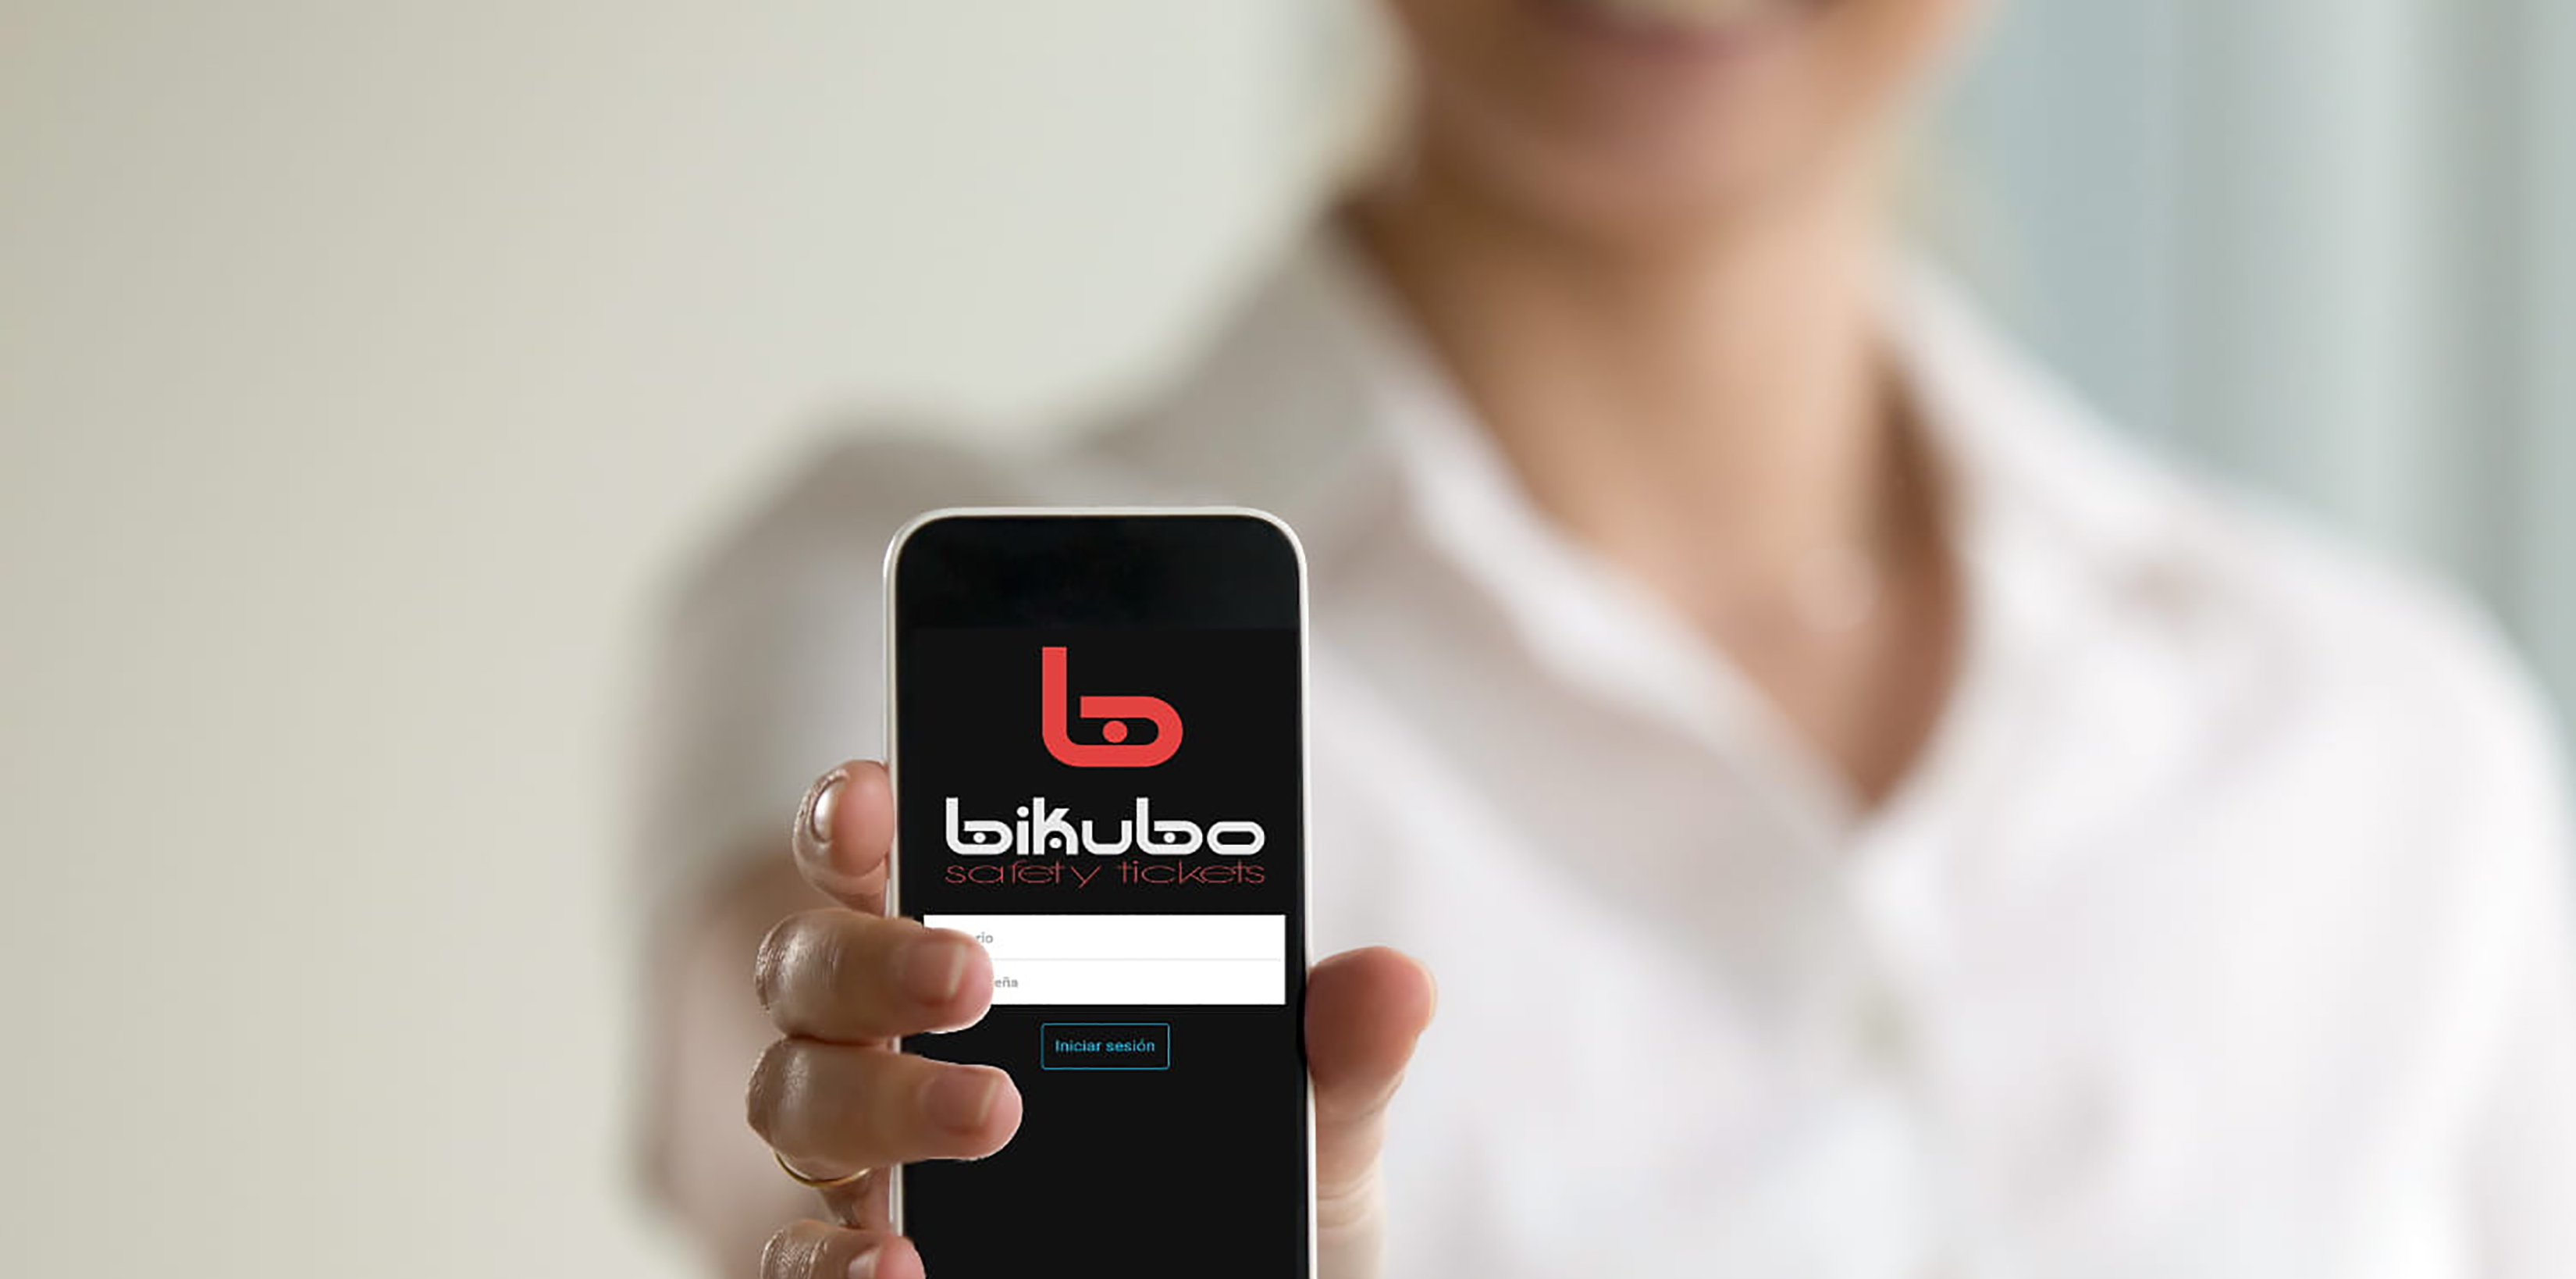 Bikubo.com